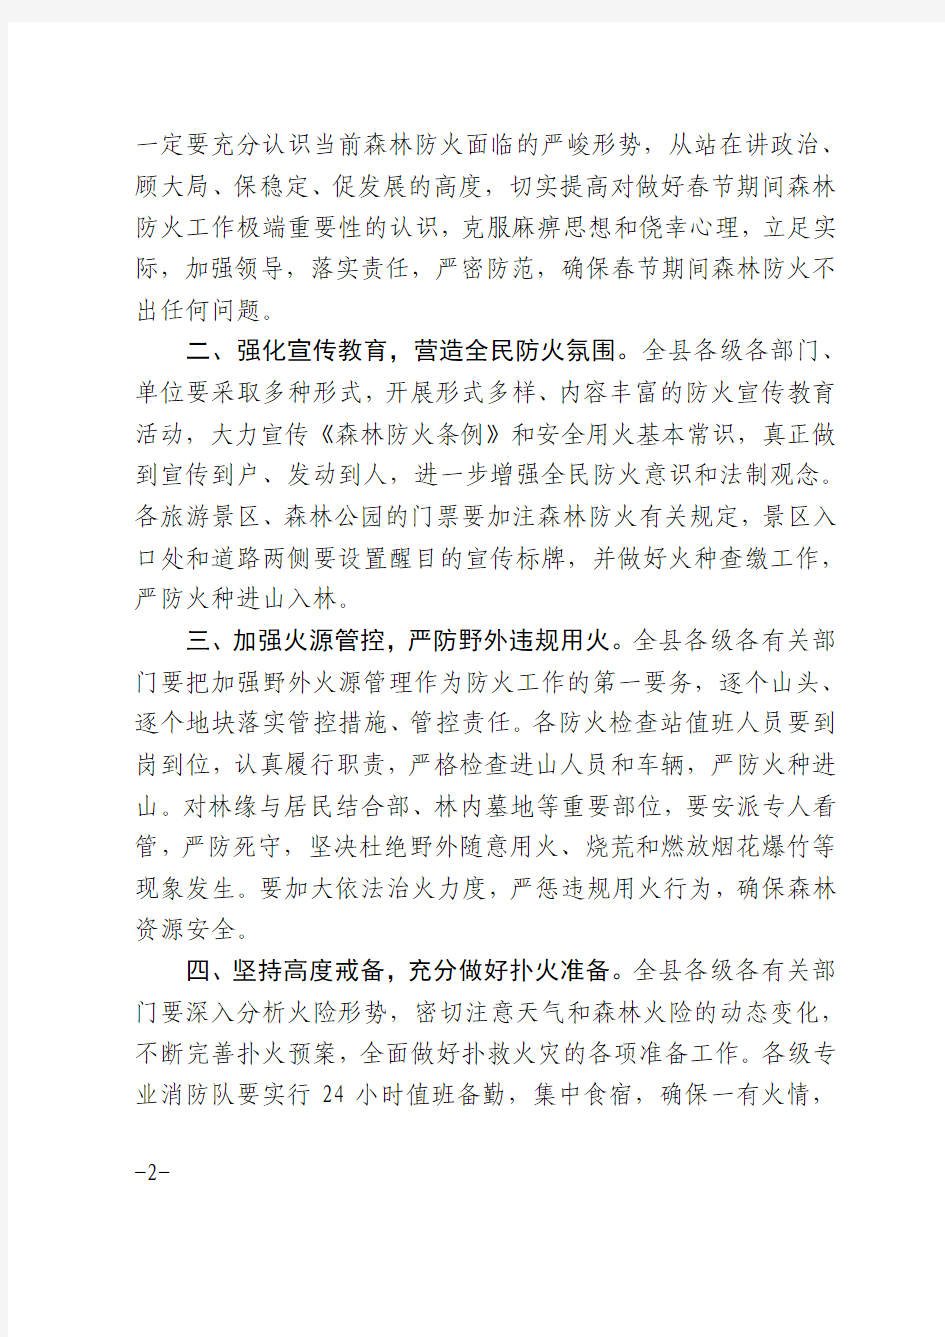 沂南县人民政府办公室关于切实做好春节期间森林防火工作的通知